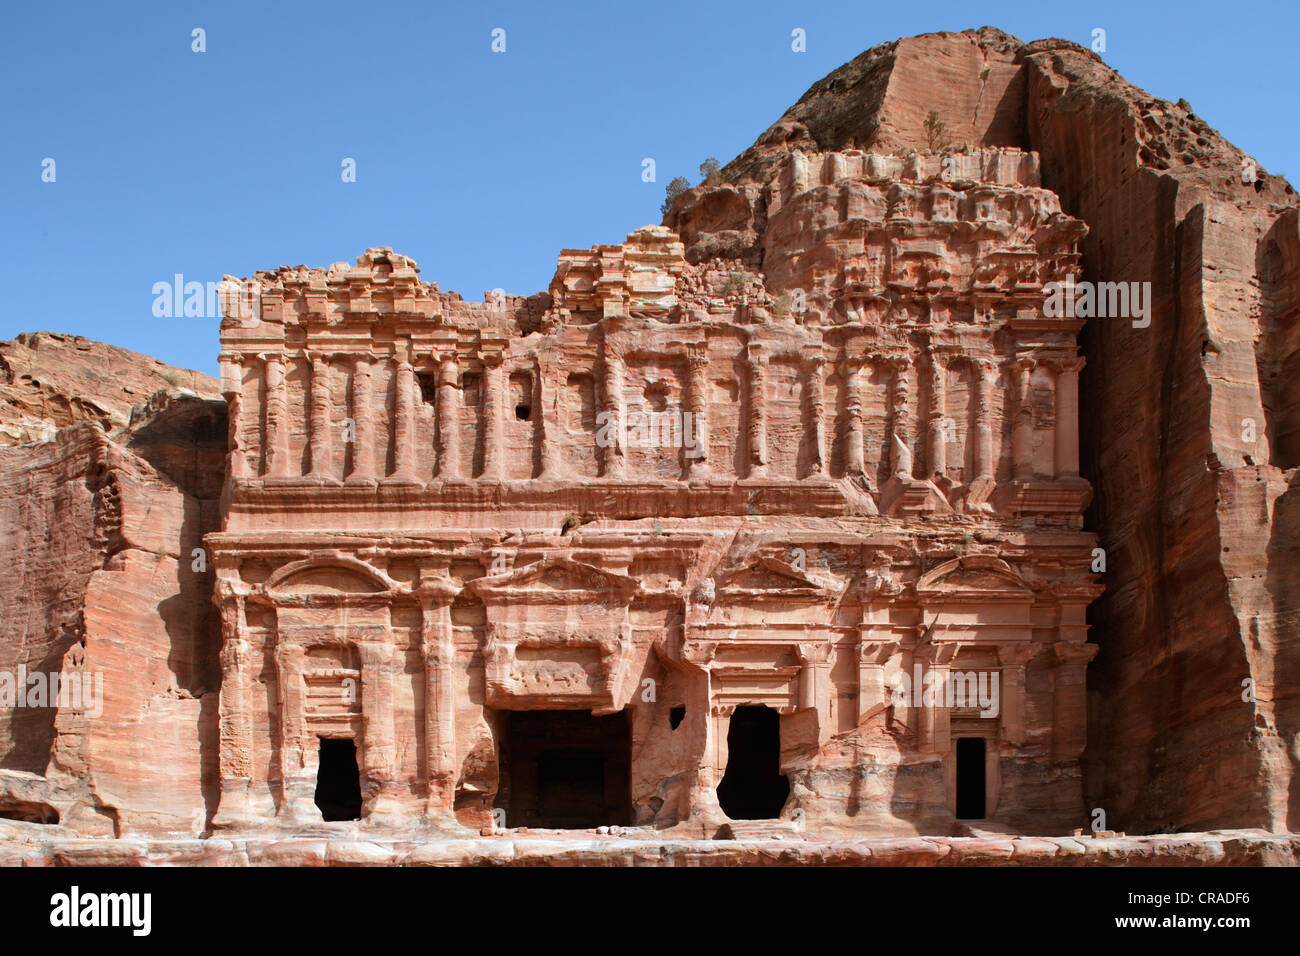 Tumba del palacio, con pilastras, dedican columnas, Petra, la ciudad capital de los nabateos, rock city, UNESCO World Hertage Site Foto de stock